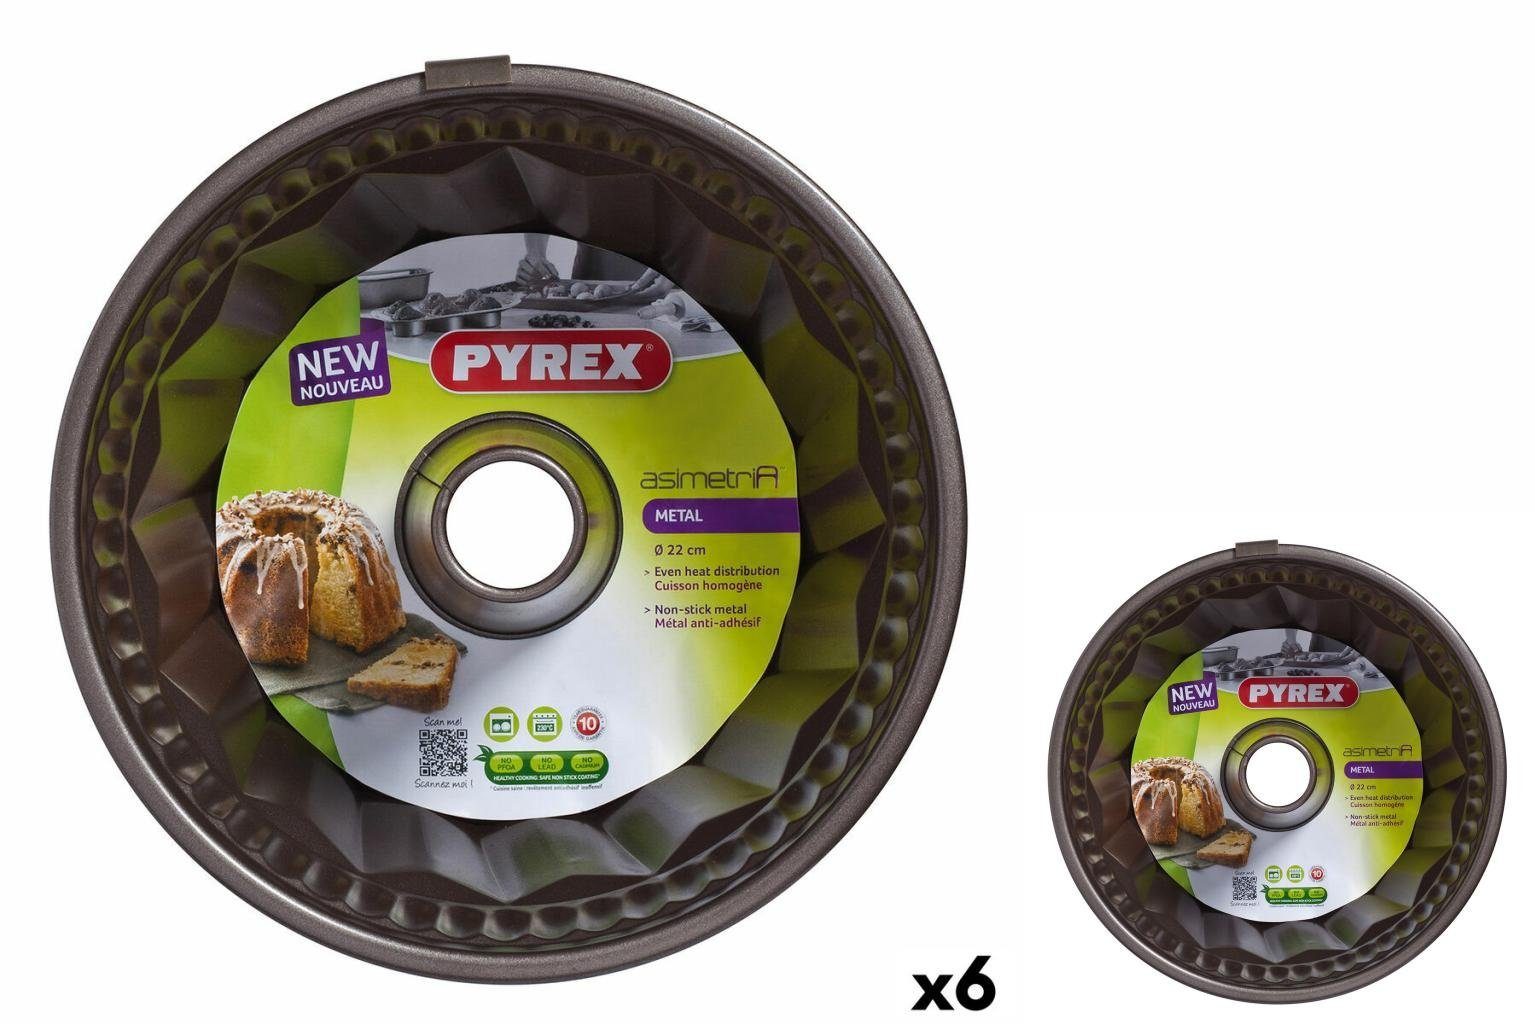 Pyrex Metall cm Backform Ring 6 Schwarz Pyrex Backform Asimetria Stück 22